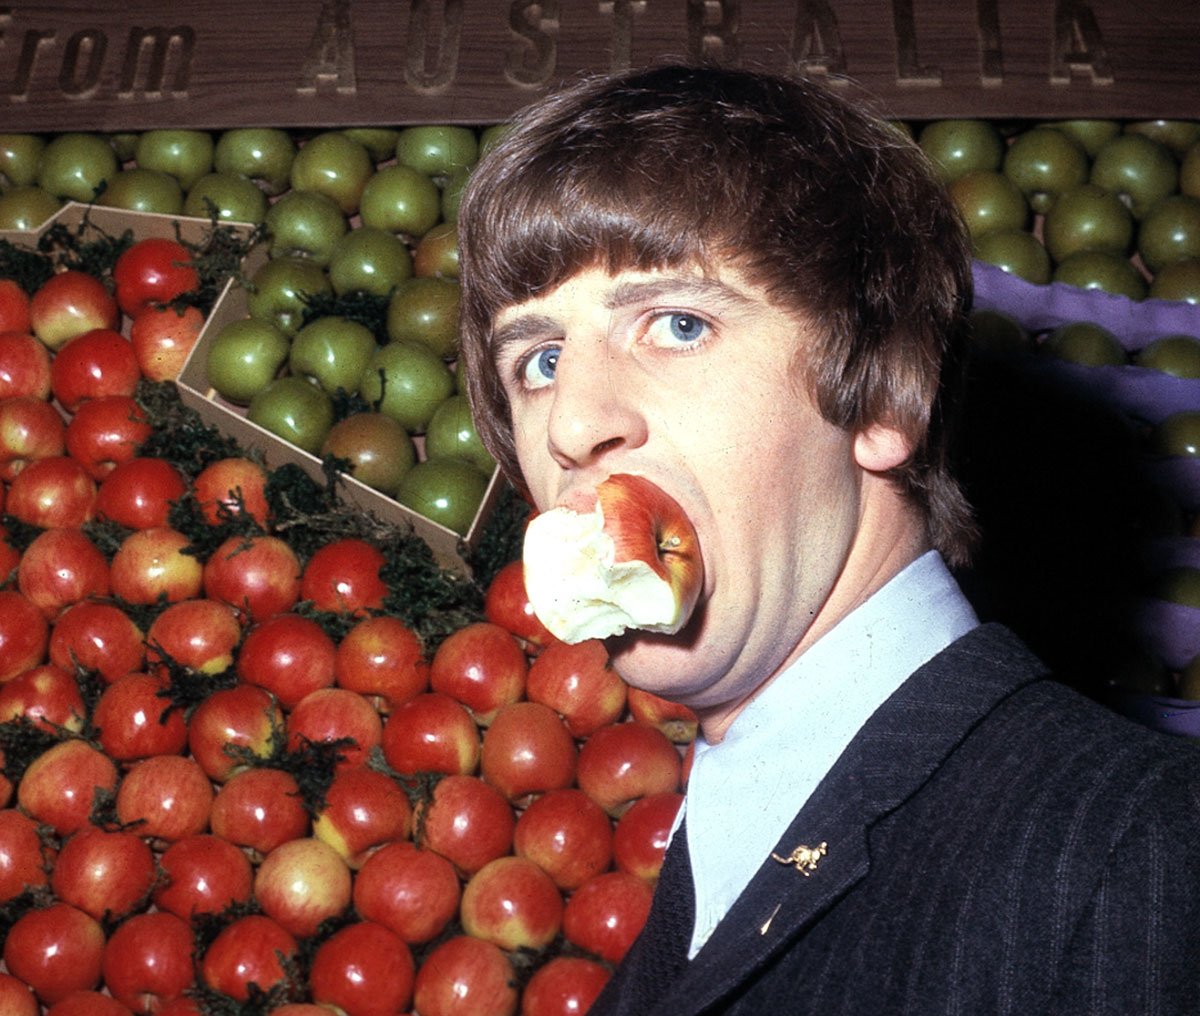 Ringo Starr eating an apple